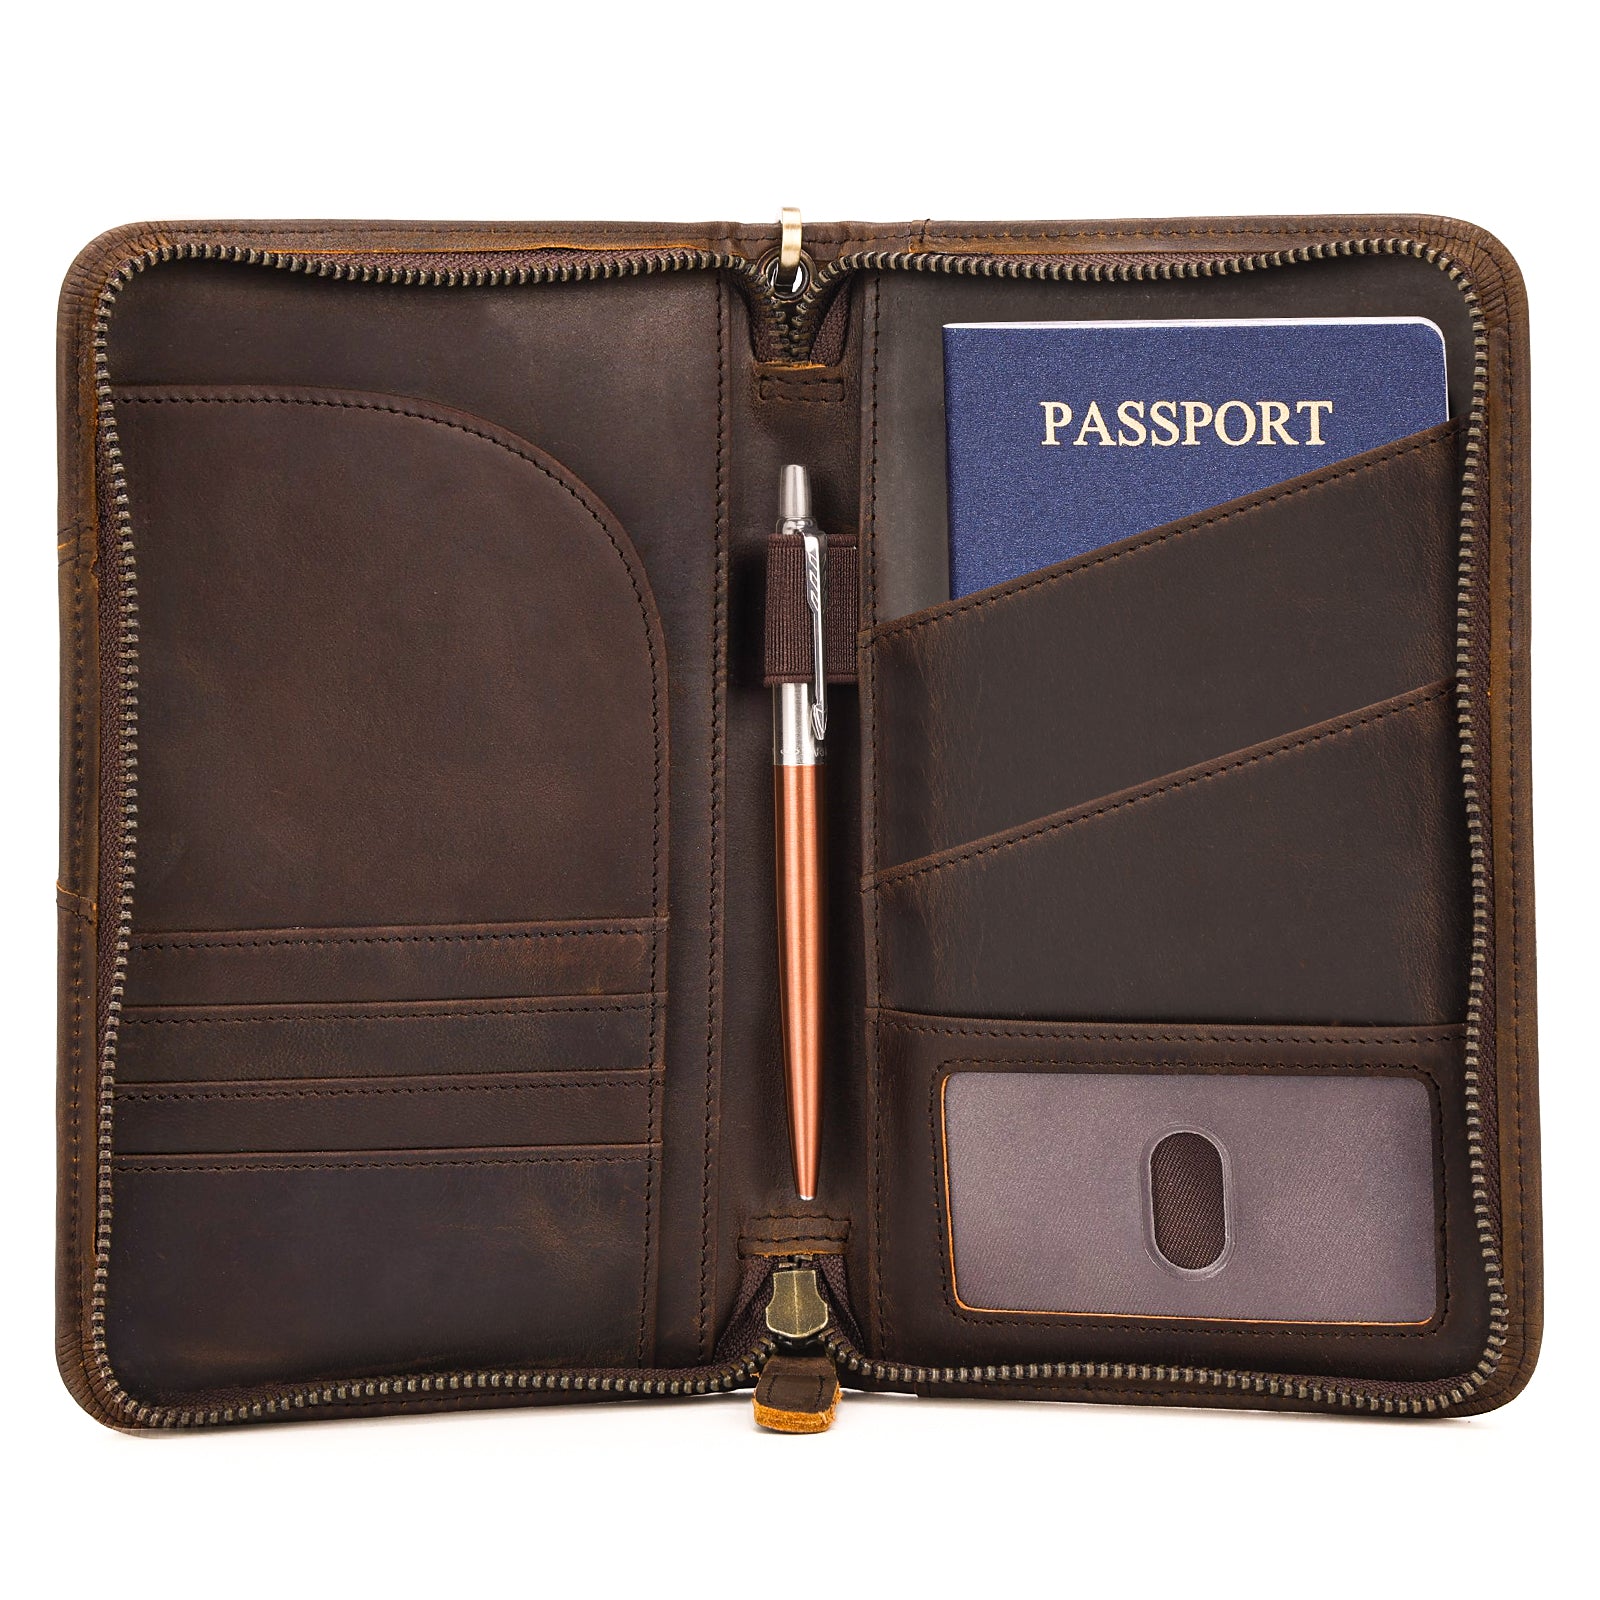 Full Grain Leather Passport Ticket Holder Case Holds 2 Passports (Dark Brown)